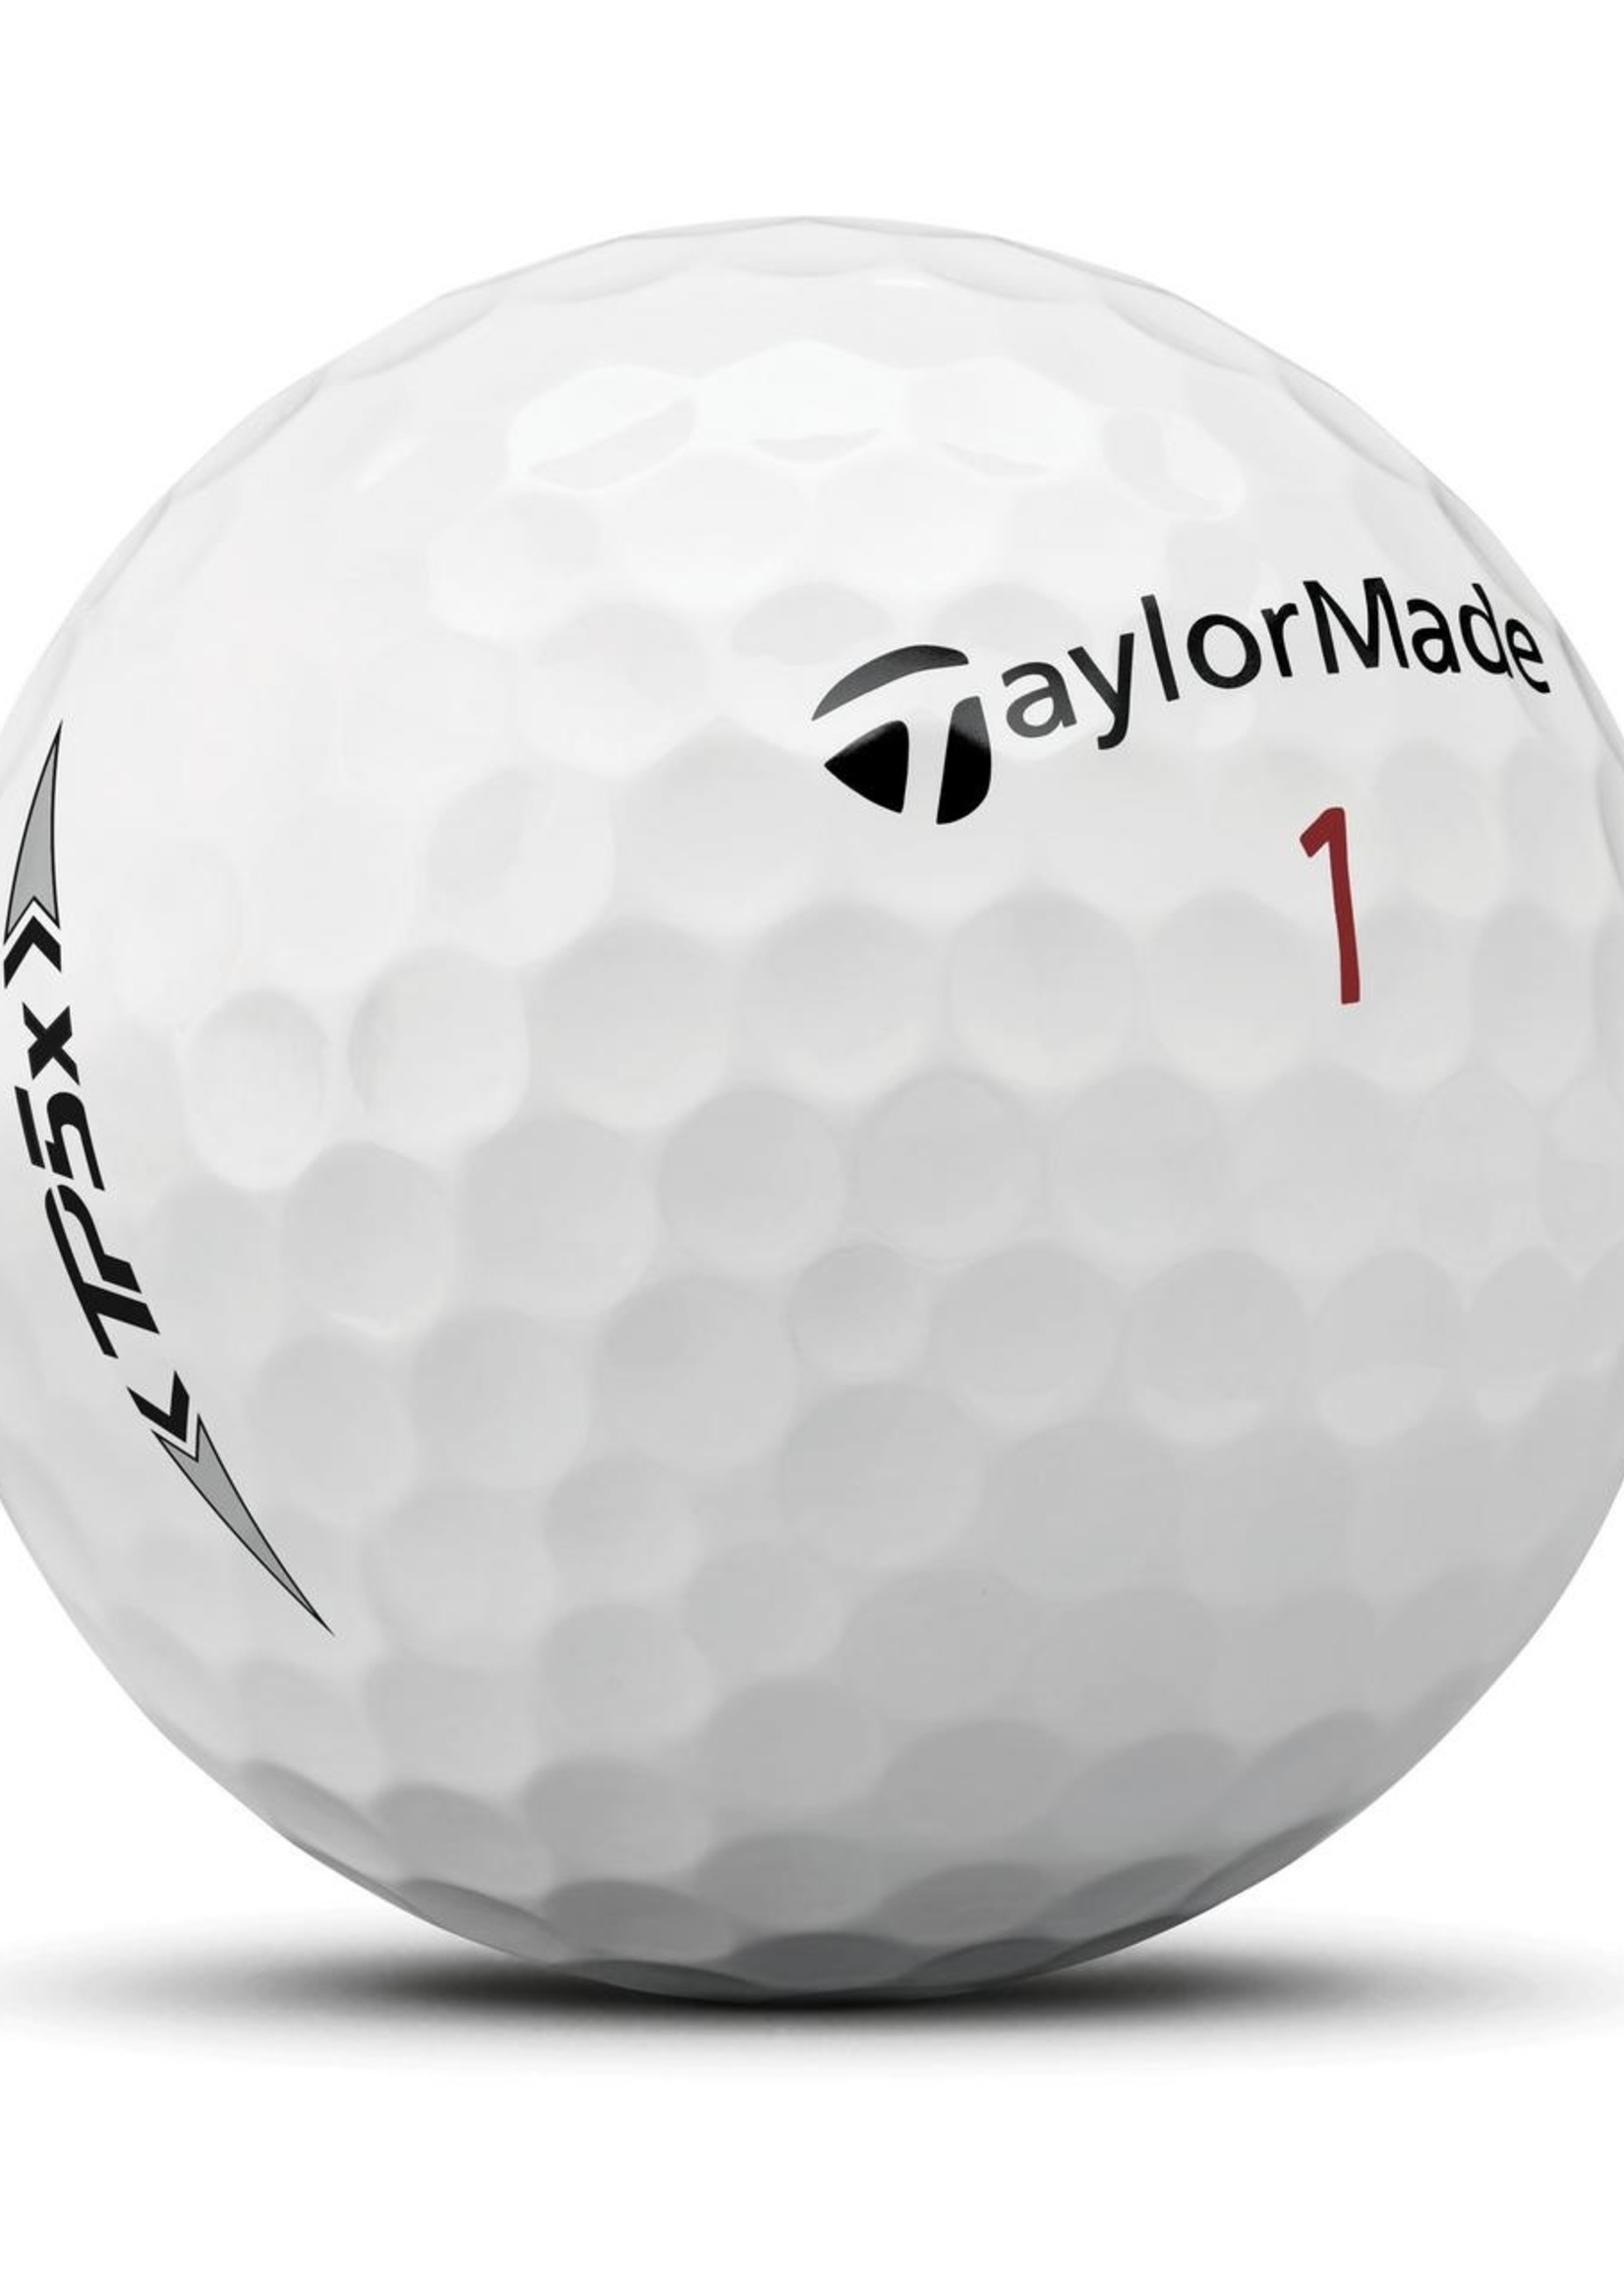 Taylormade TaylorMade TP5x Golf Ball Dozen